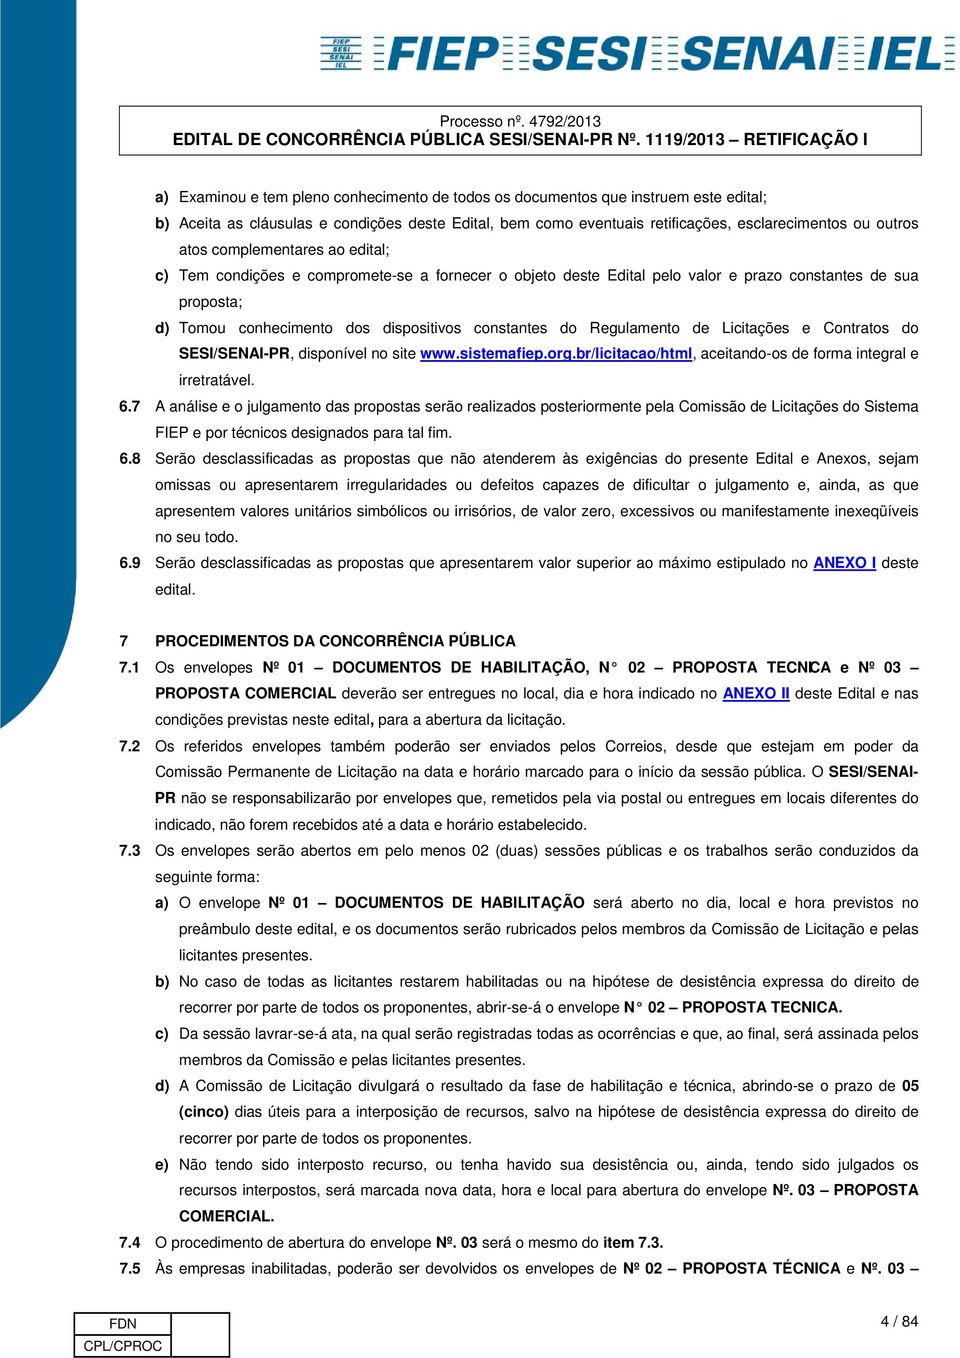 Regulamento de Licitações e Contratos do SESI/SENAI-PR, disponível no site www.sistemafiep.org.br/licitacao/html, aceitando-os de forma integral e irretratável. 6.